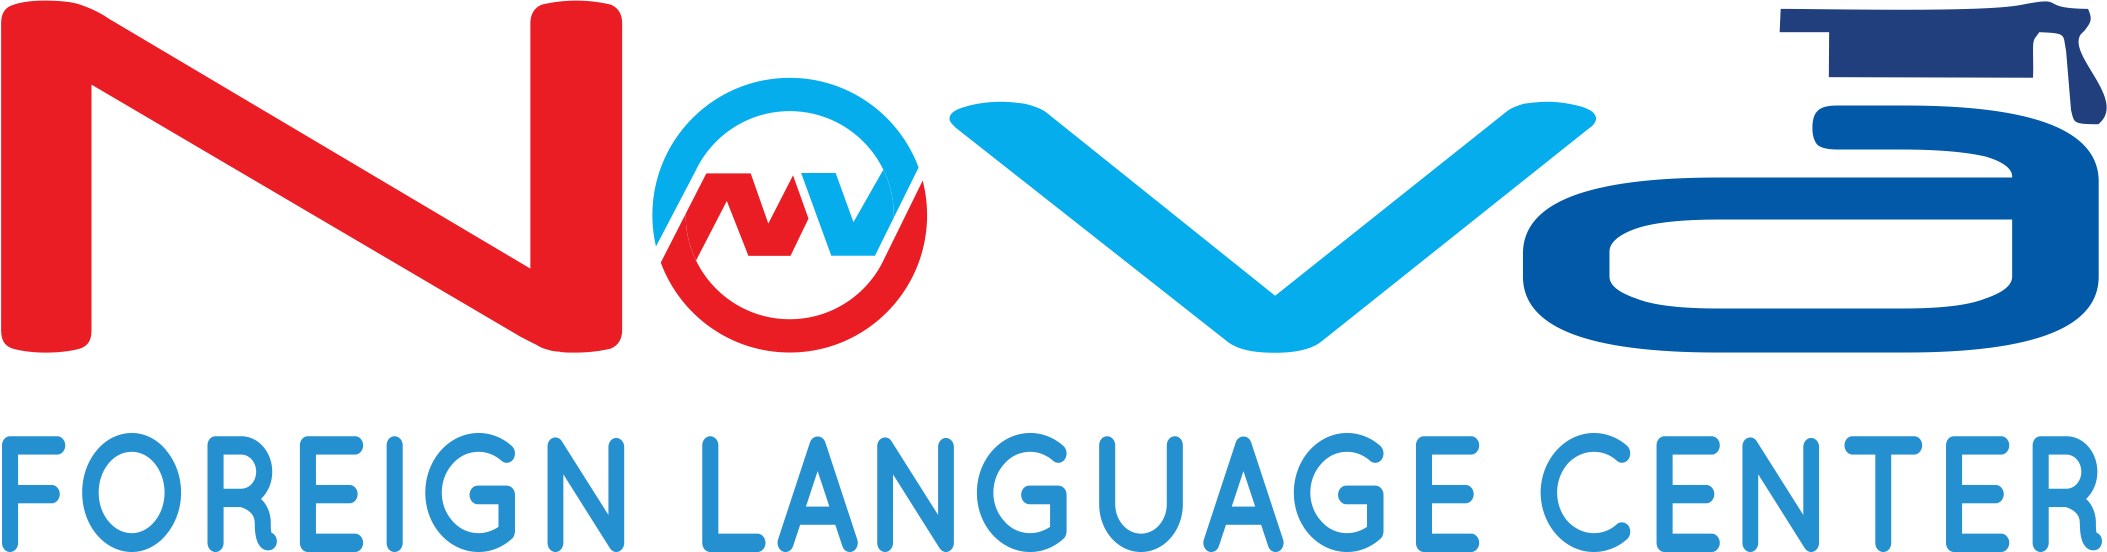 NOVA FOREIGN LANGUAGE CENTER